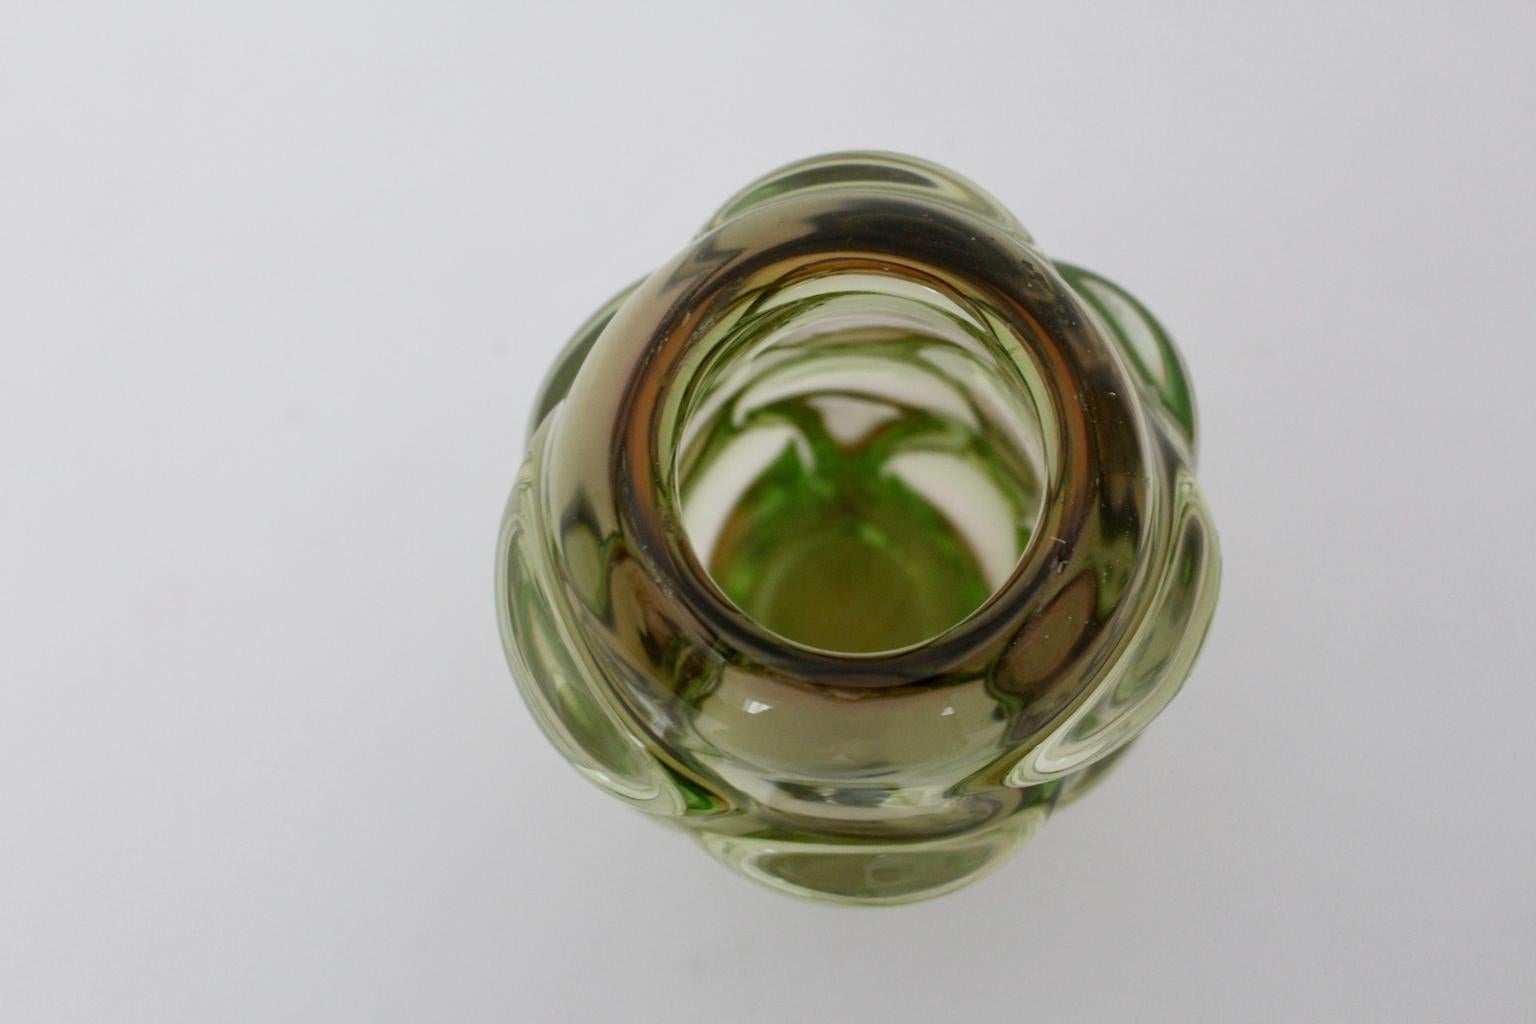 Mid-20th Century Green Glass Vase by Jan Beranek for Skrdlovice Czech Republic, 1960s For Sale